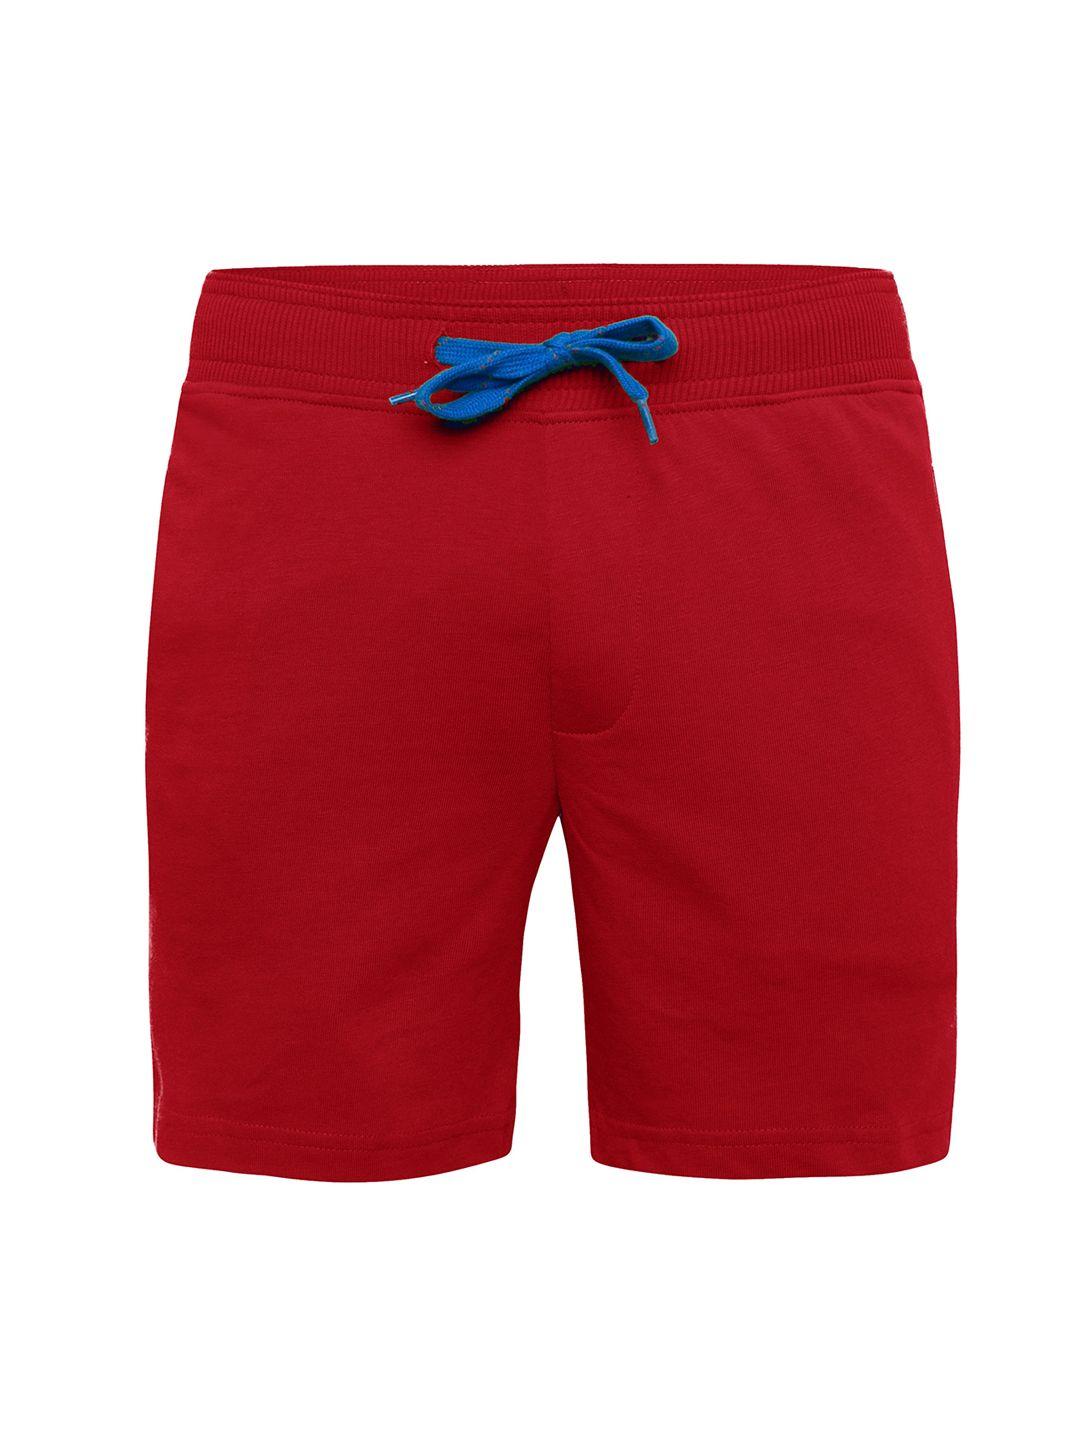 jockey boys red solid regular fit regular shorts